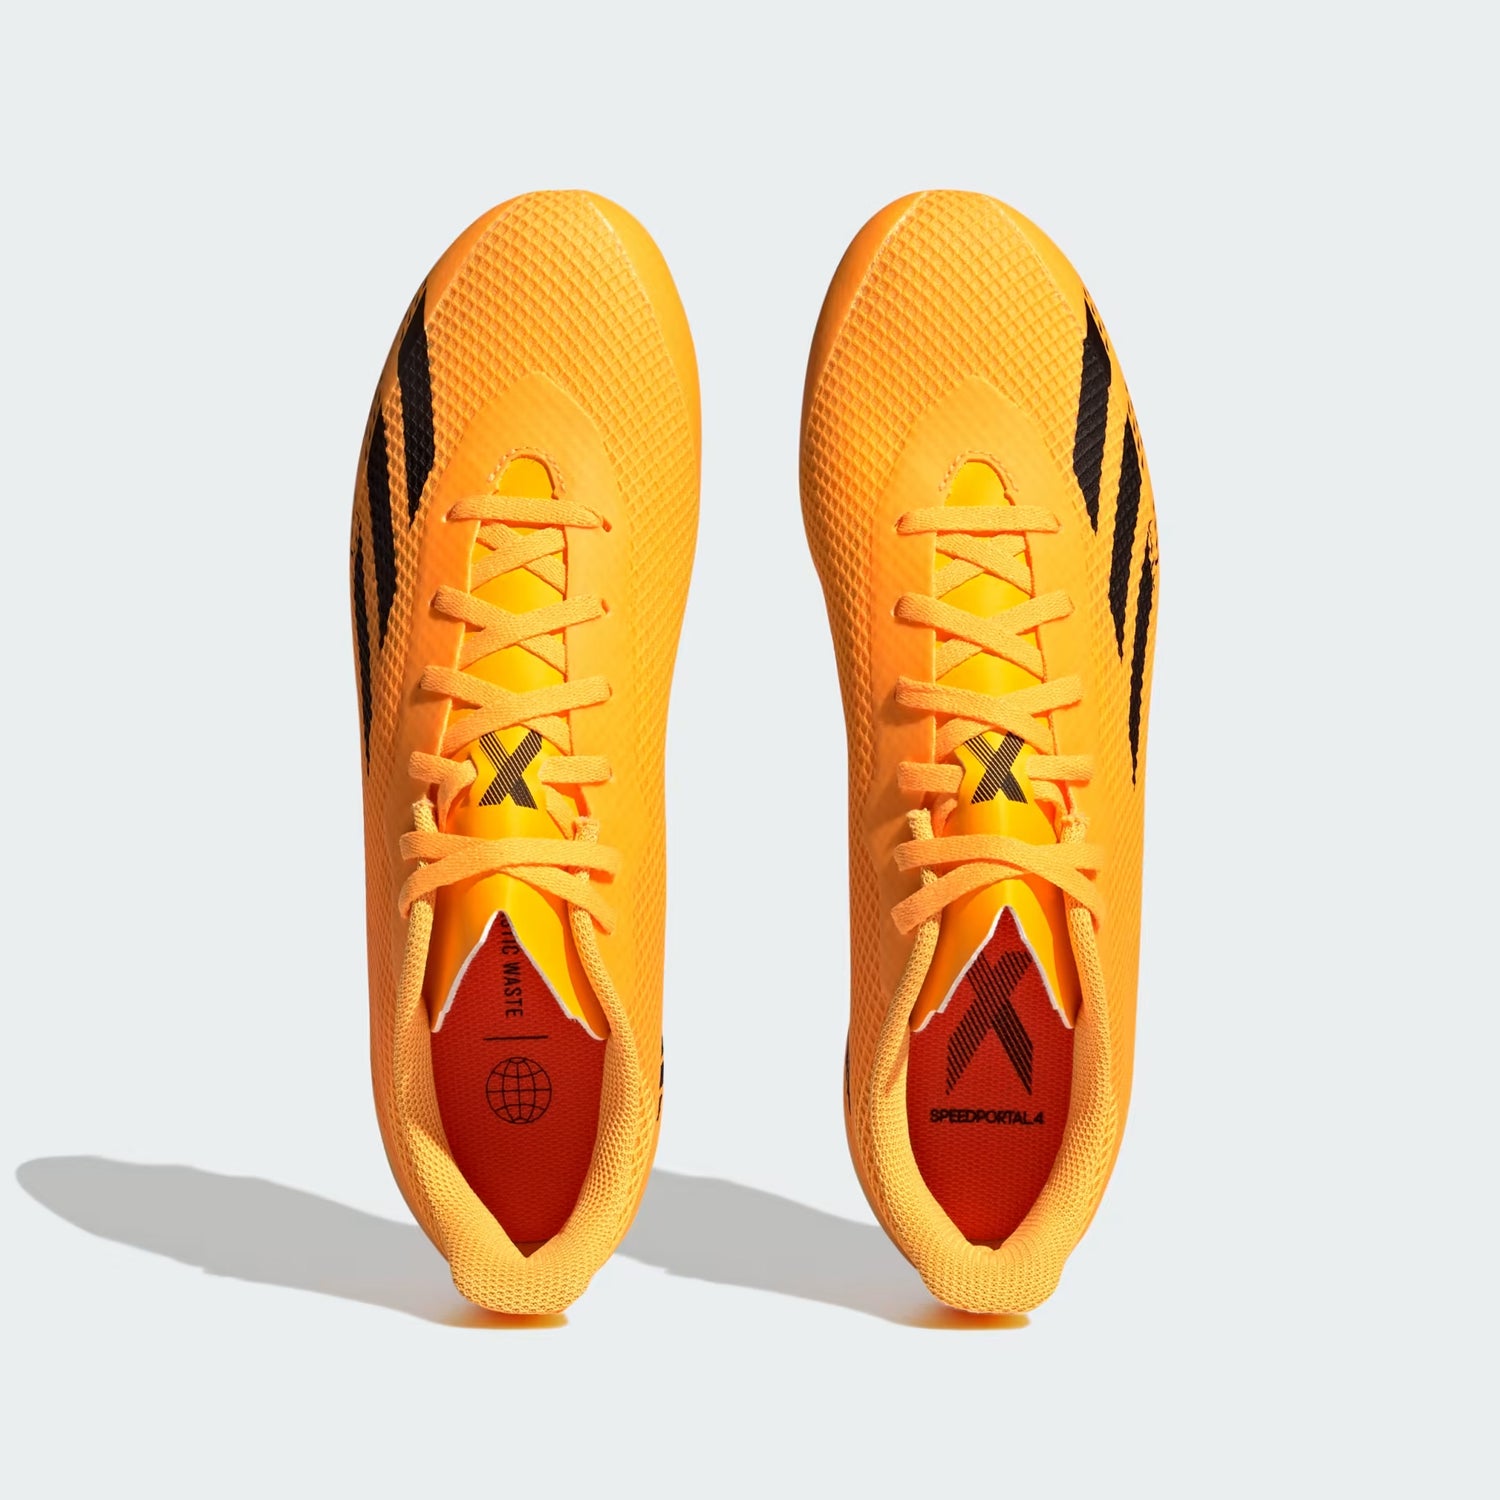 אדידס נעלי כדורגל בצבע צהוב לגברים-Adidas-40 2/3-נאקו